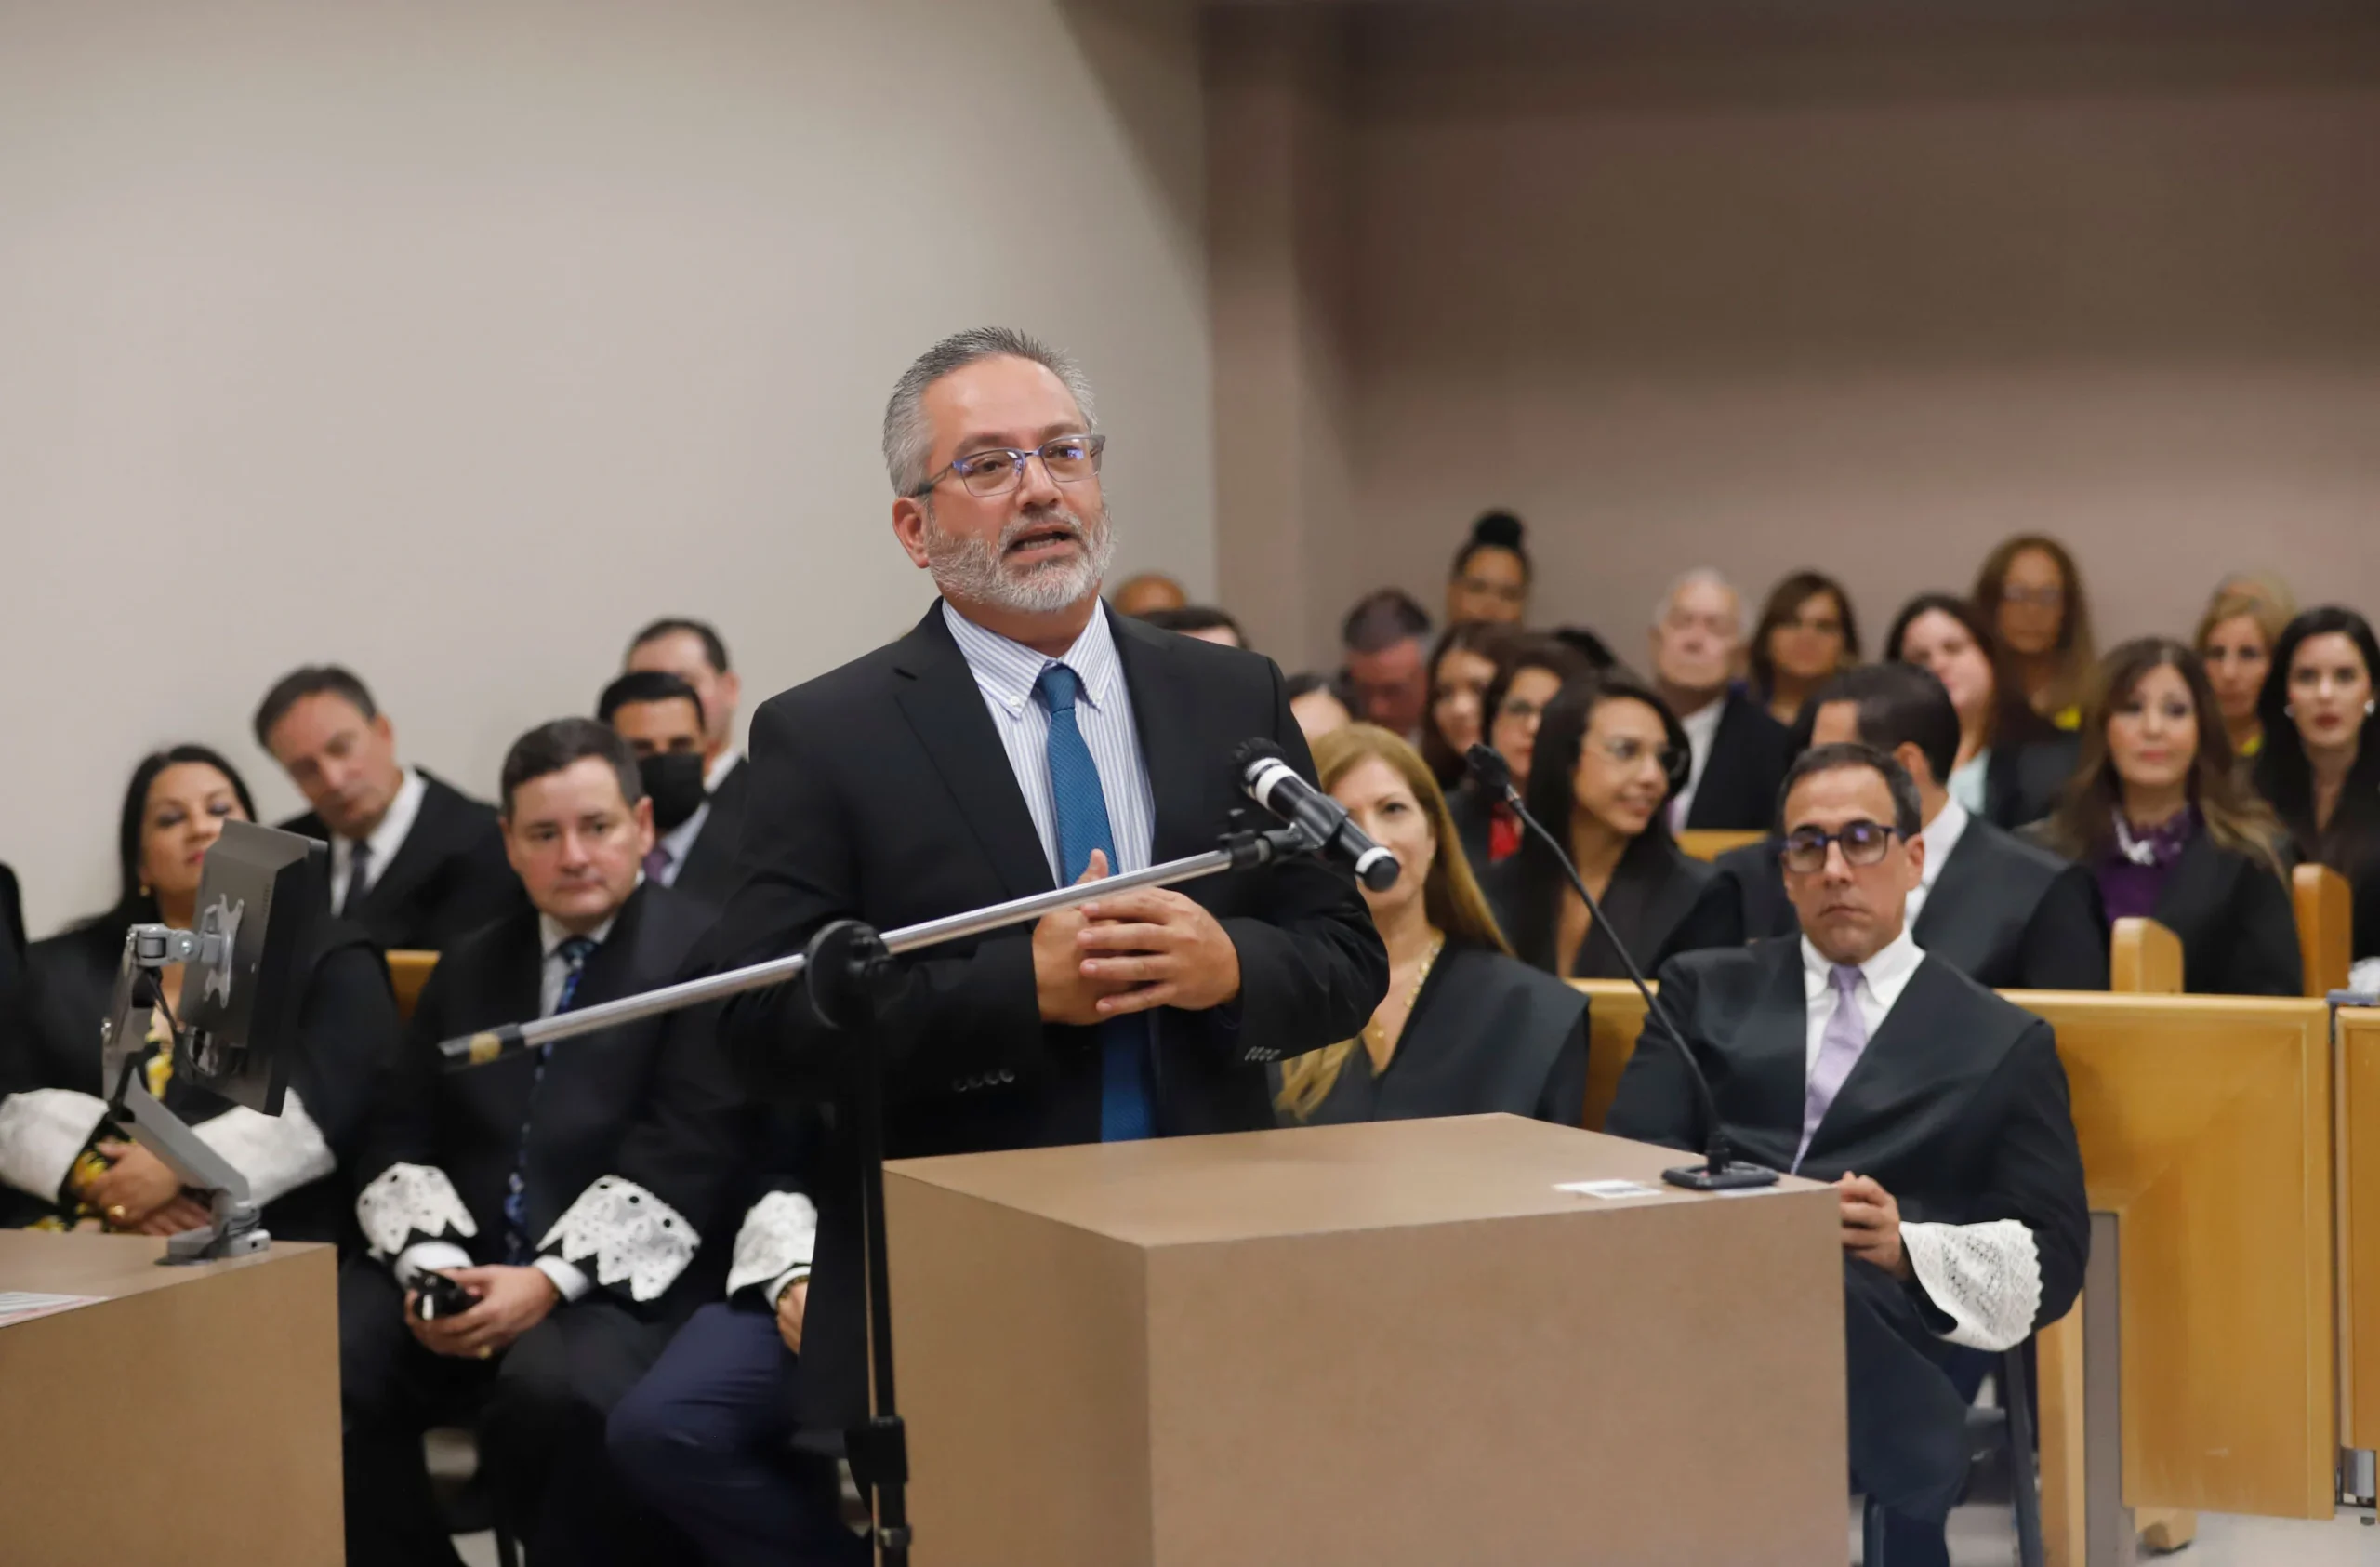 El Lcdo. Manuel Rivera Lugo, presidente de la Delegación de Abogados de Humacao, ofreció un mensaje a nombre de los abogados y abogadas de la Región Judicial de Humacao.